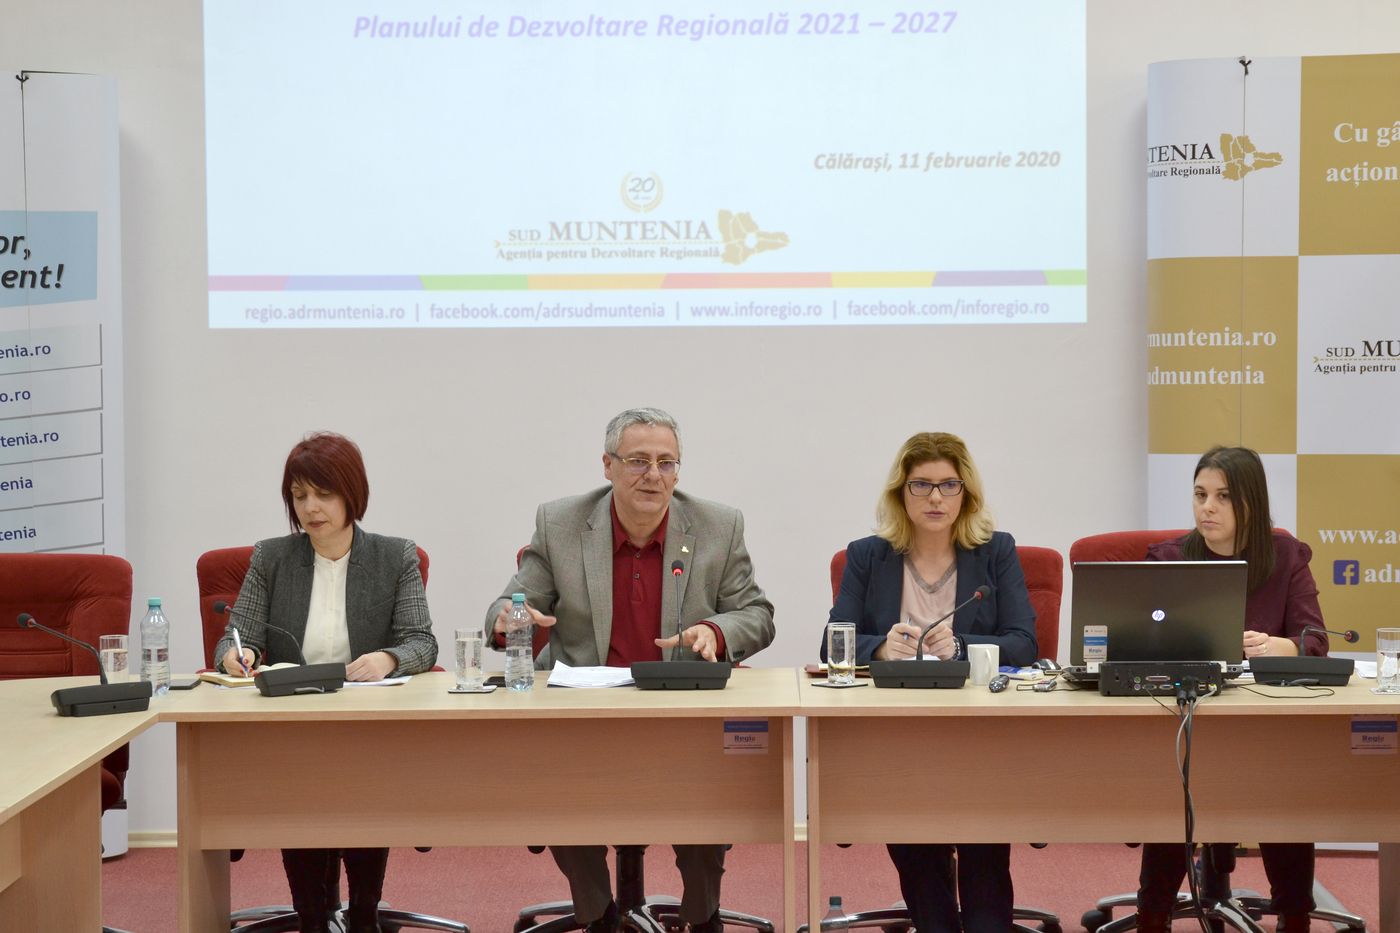 ADR Sud Muntenia – Grup tematic regional pentru dezvoltare rurală și agricultură